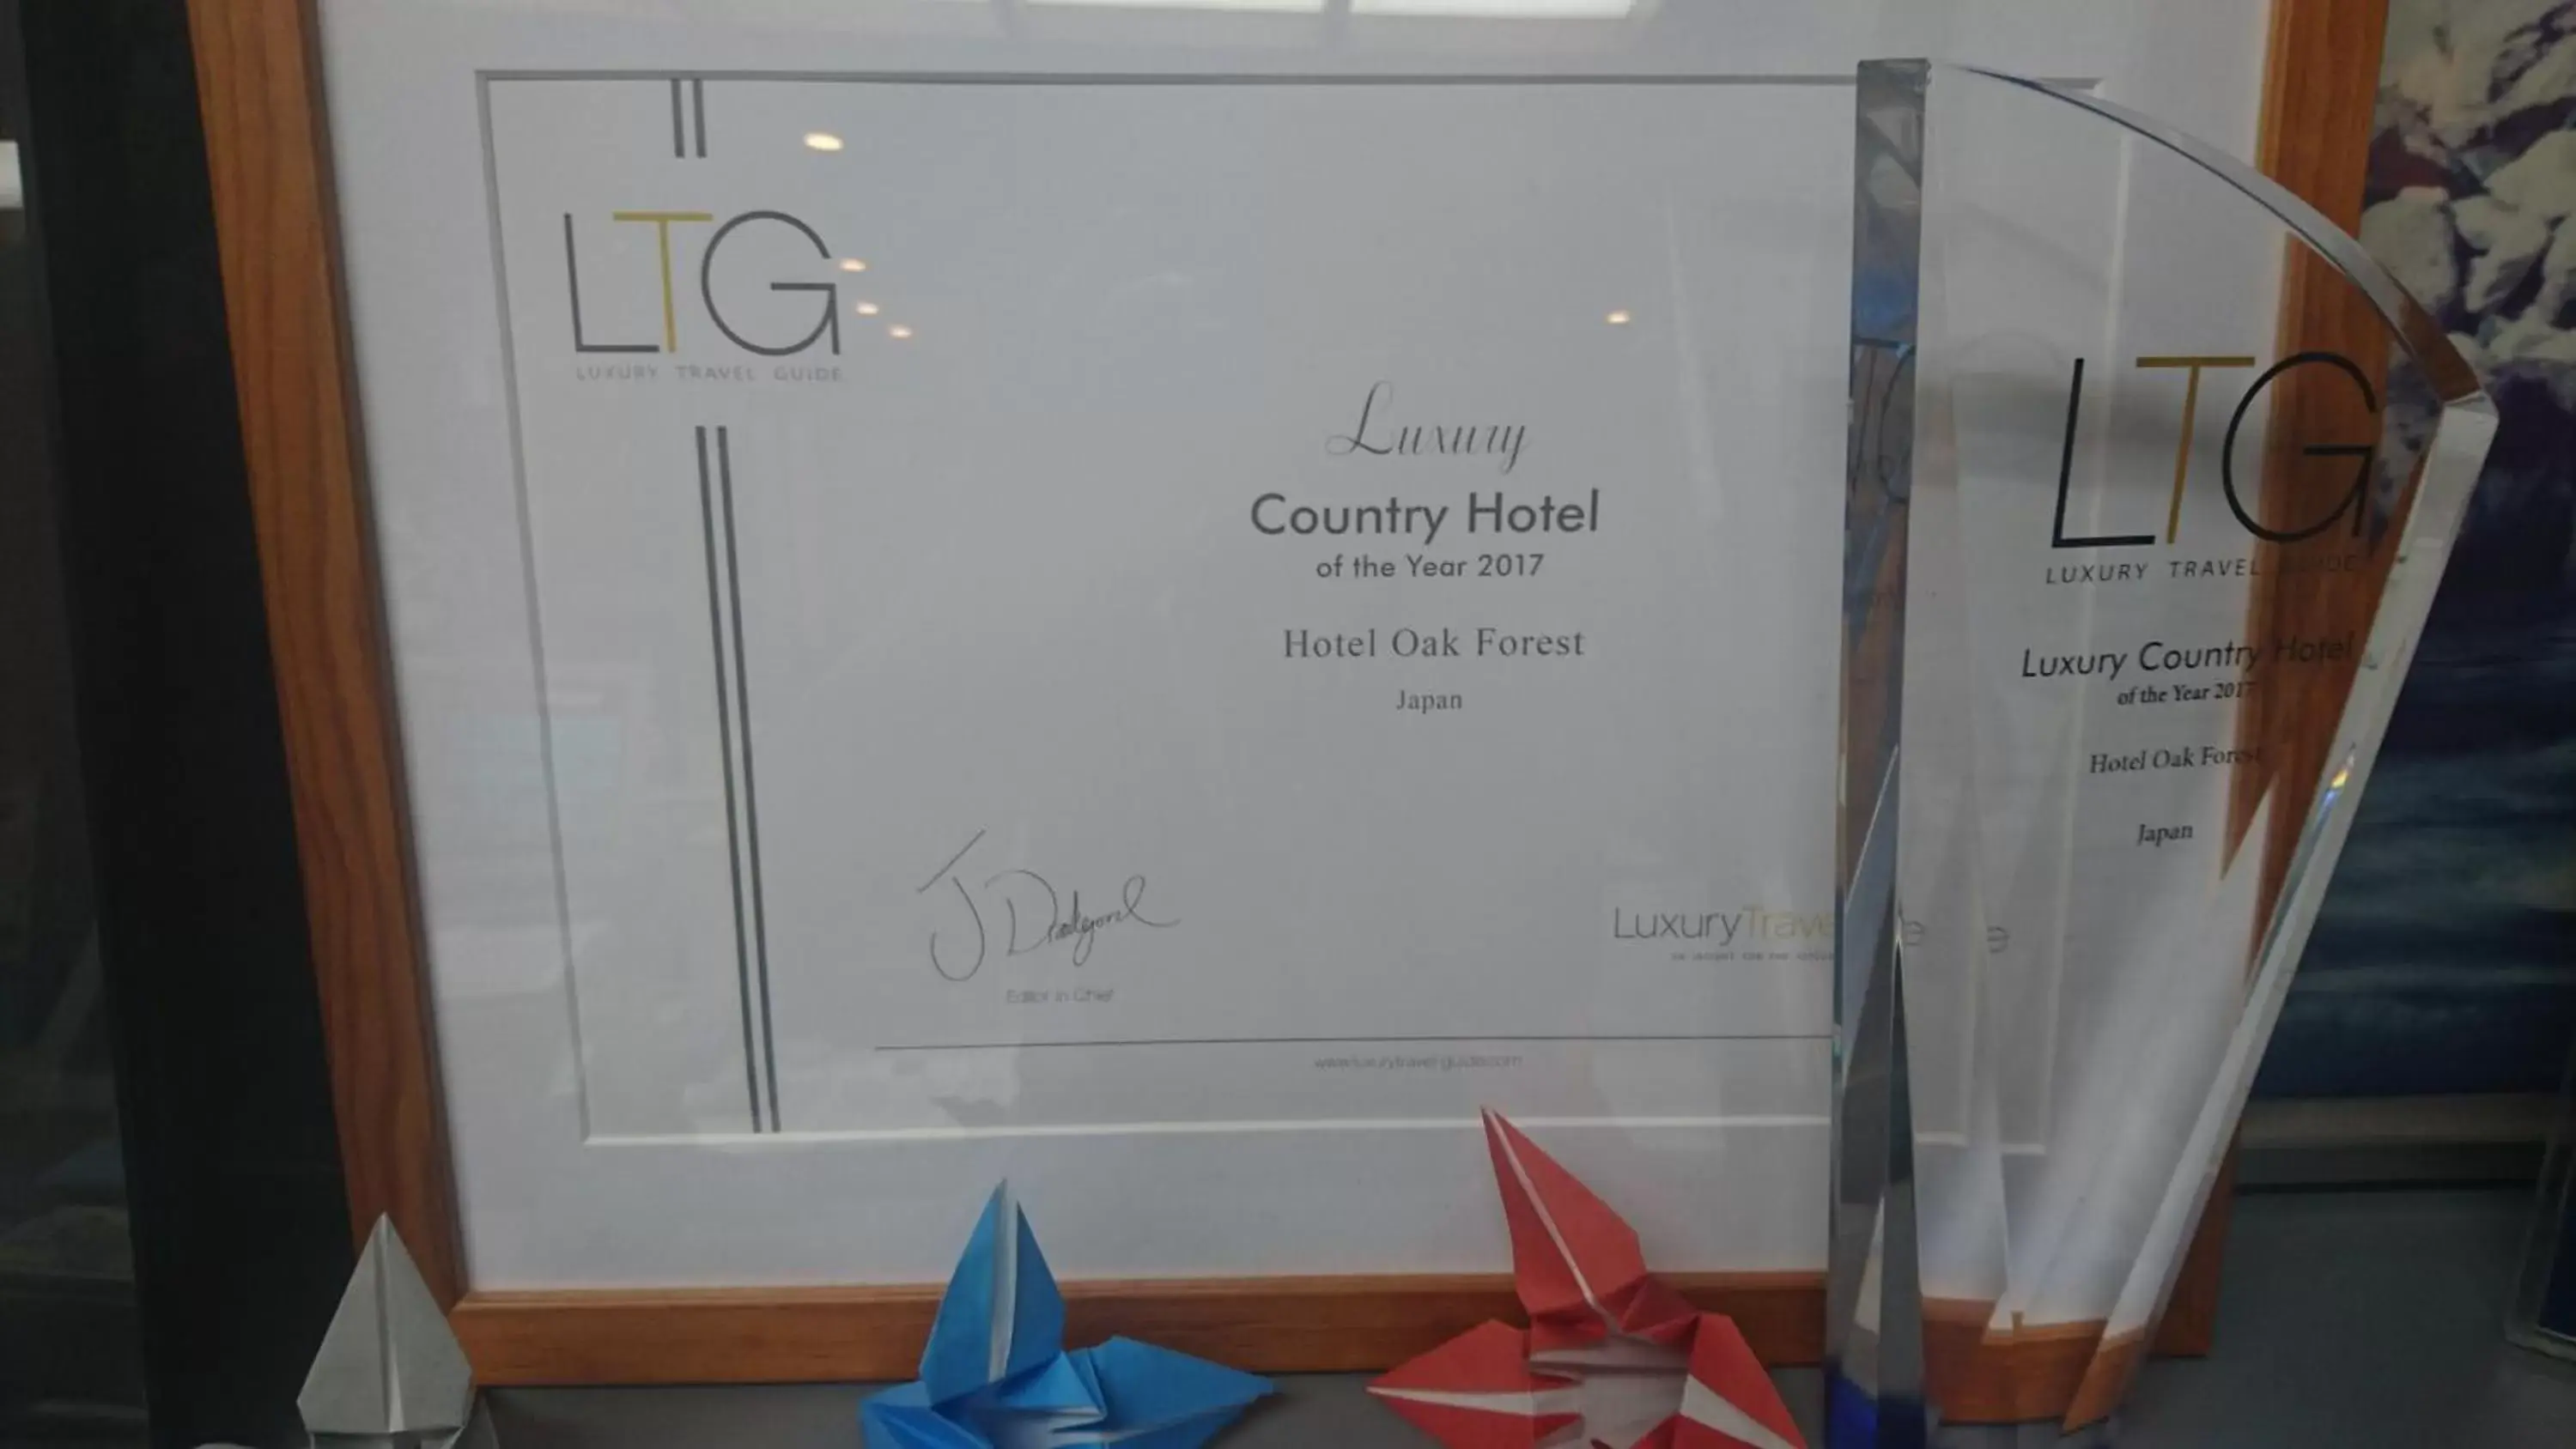 Certificate/Award in Hotel Oak Forest